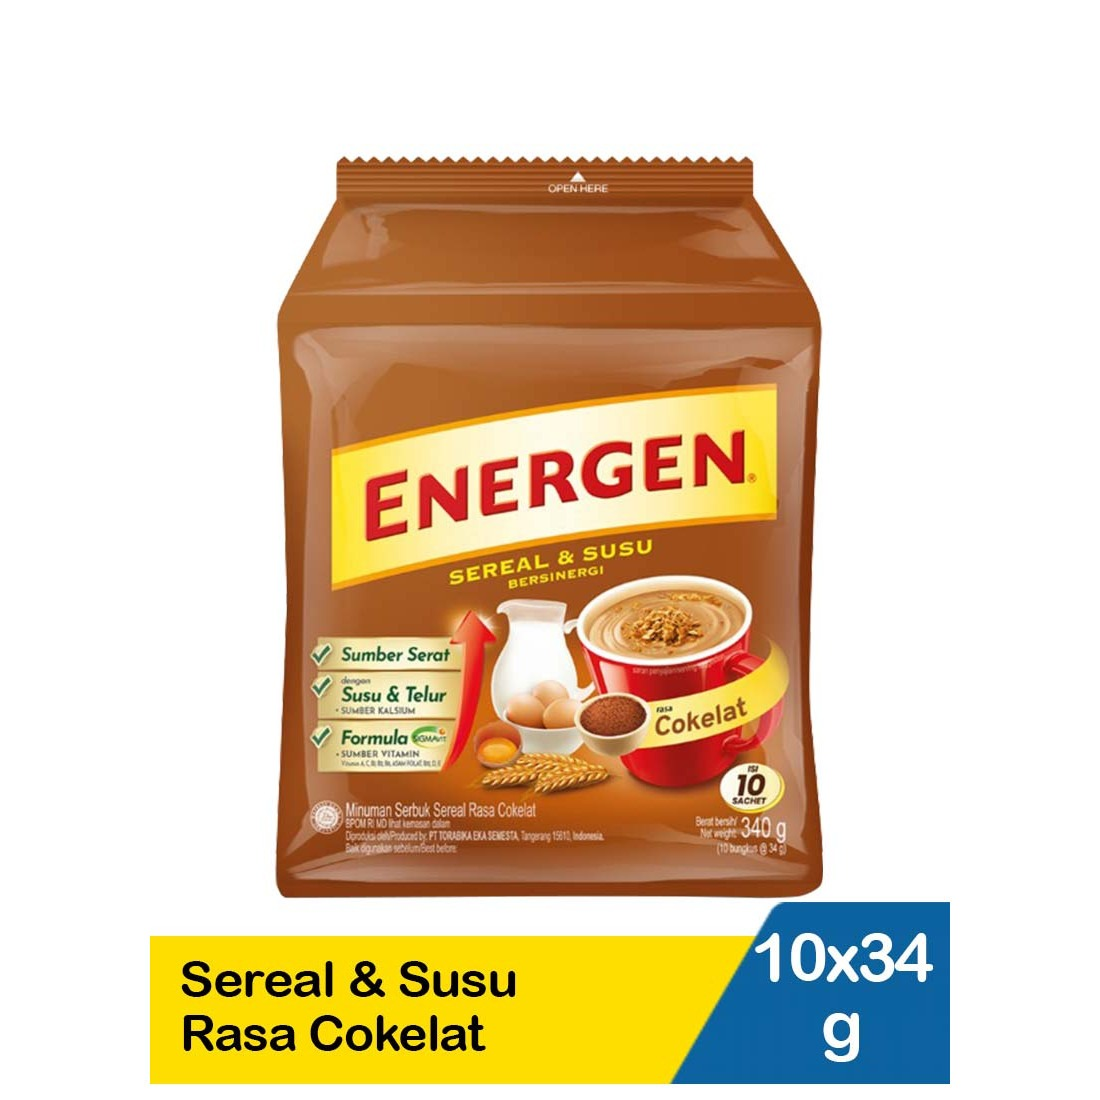 Energen 10X34g Sereal & Susu Cokelat